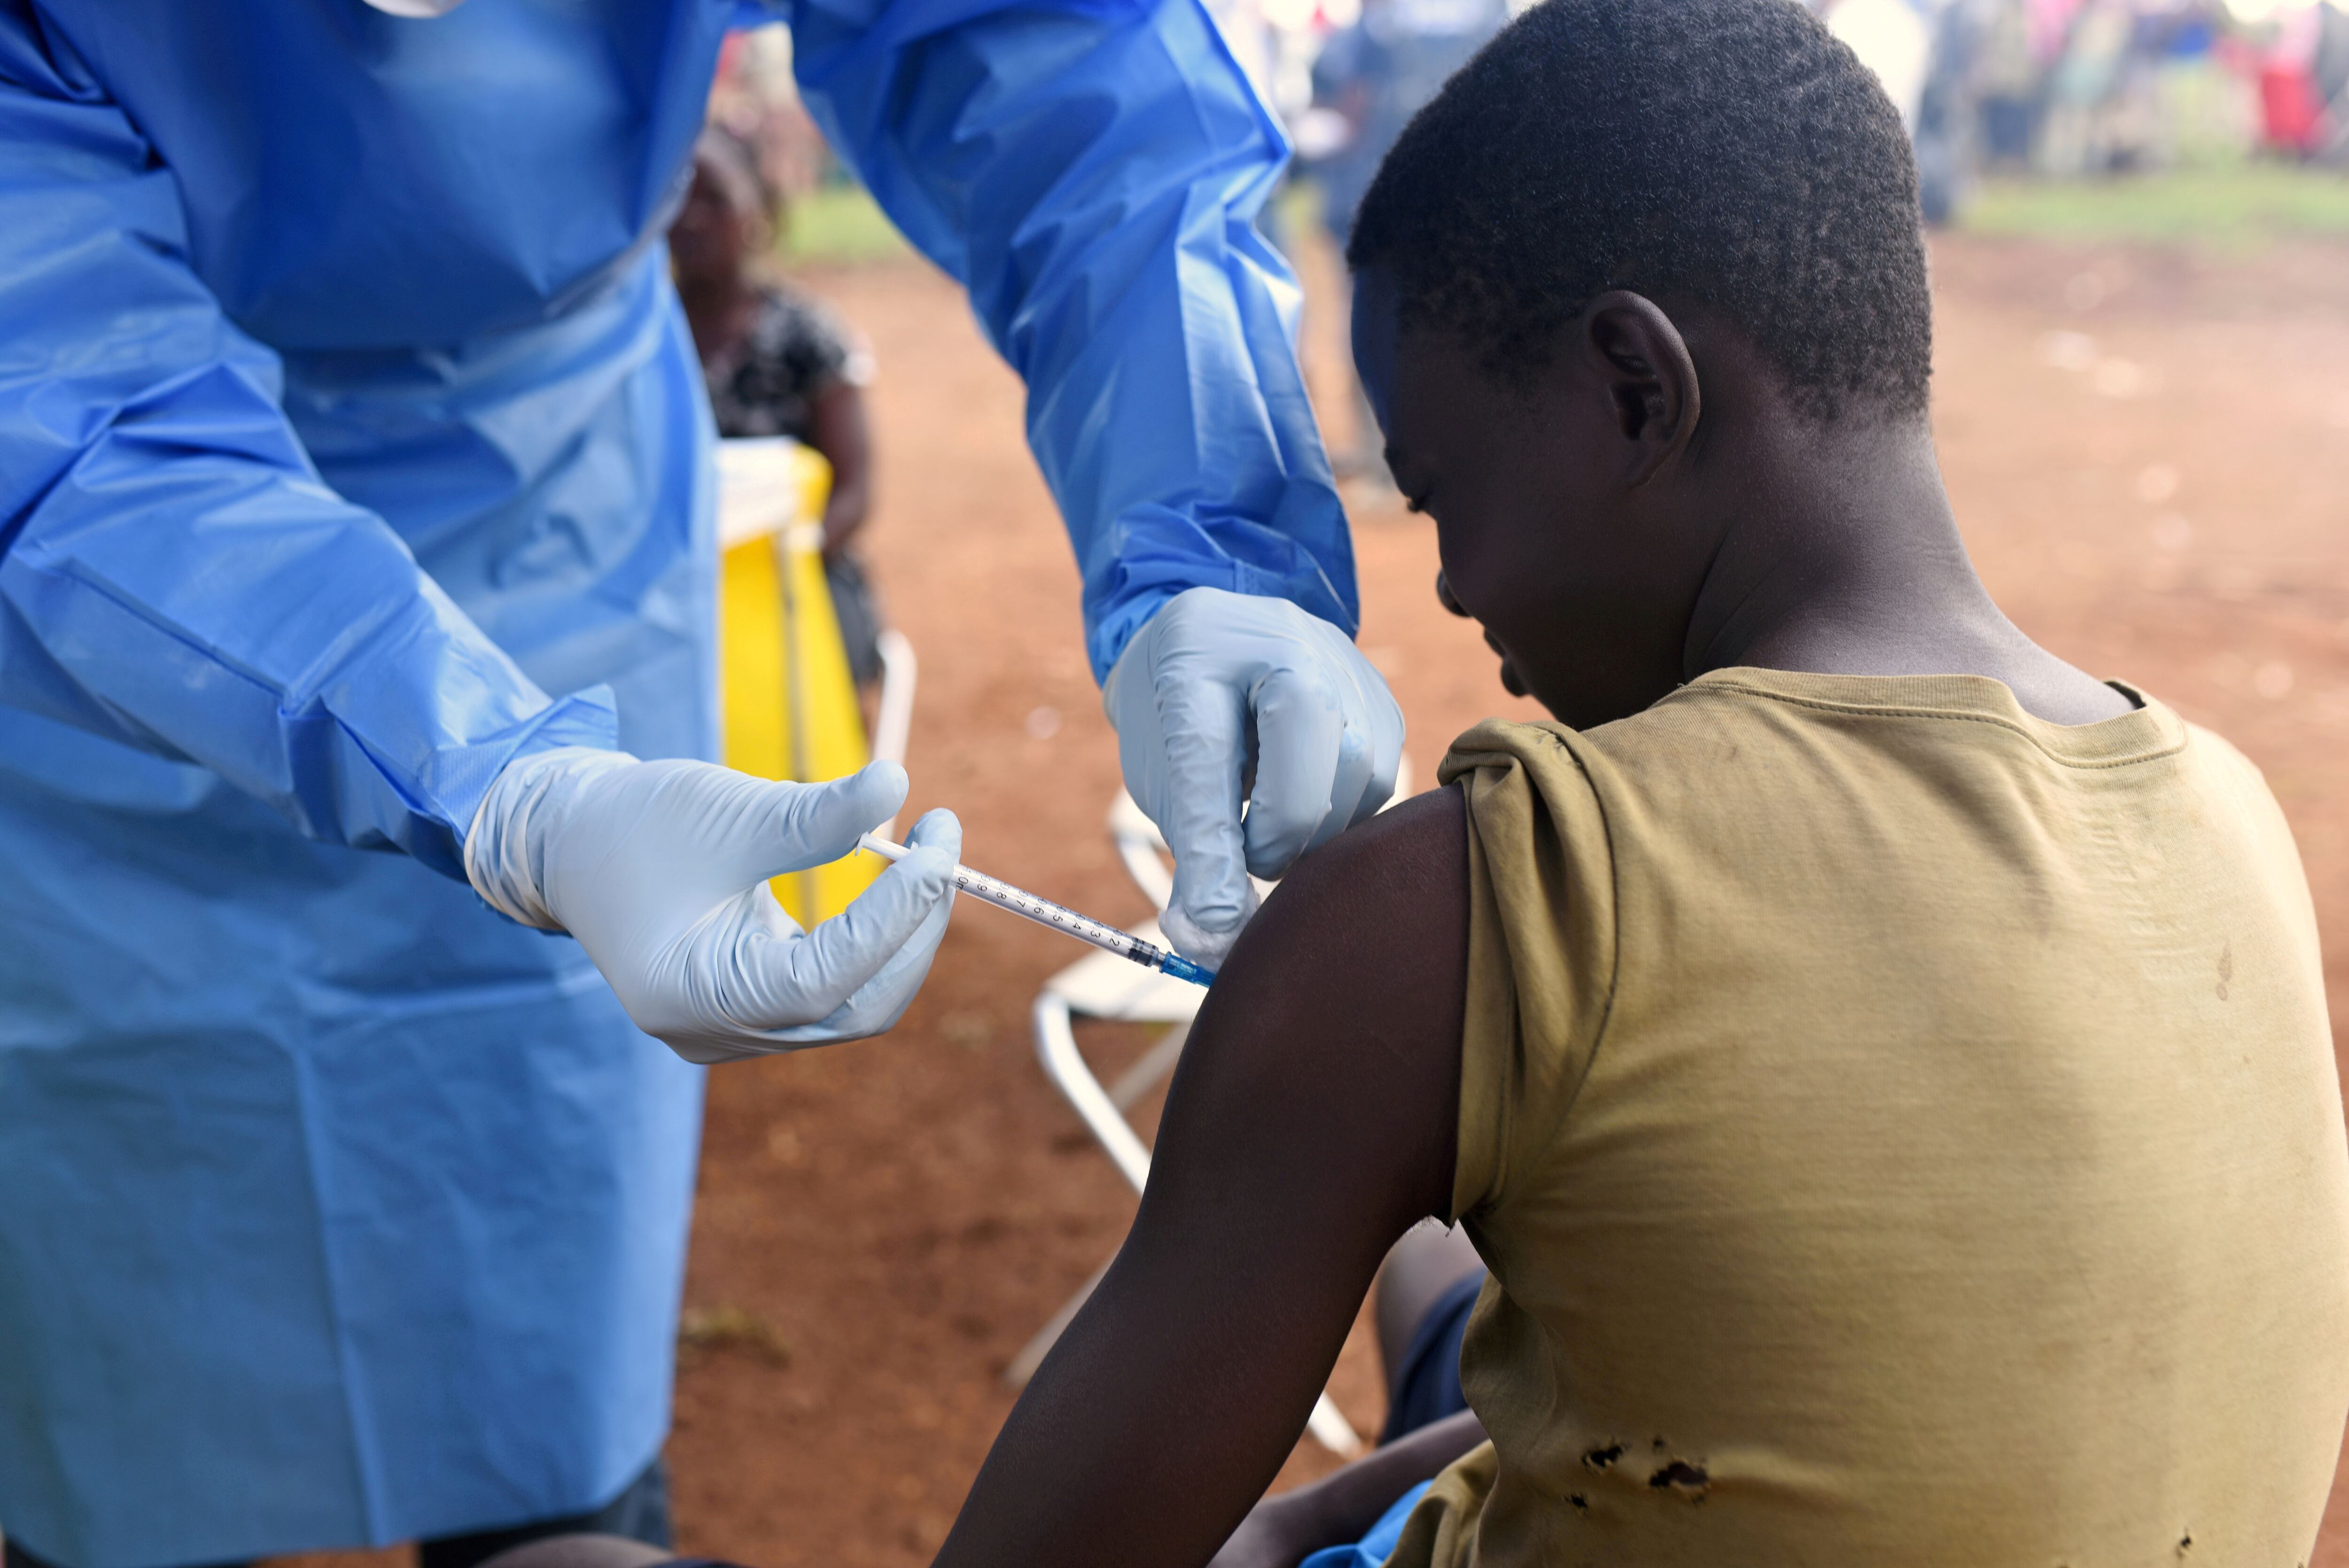 El brote más grave de la historia se convirtió en epidemia en África occidental entre 2014 y 2016, y causó más de 11.000 muertes (REUTERS/Olivia Acland//File Photo)